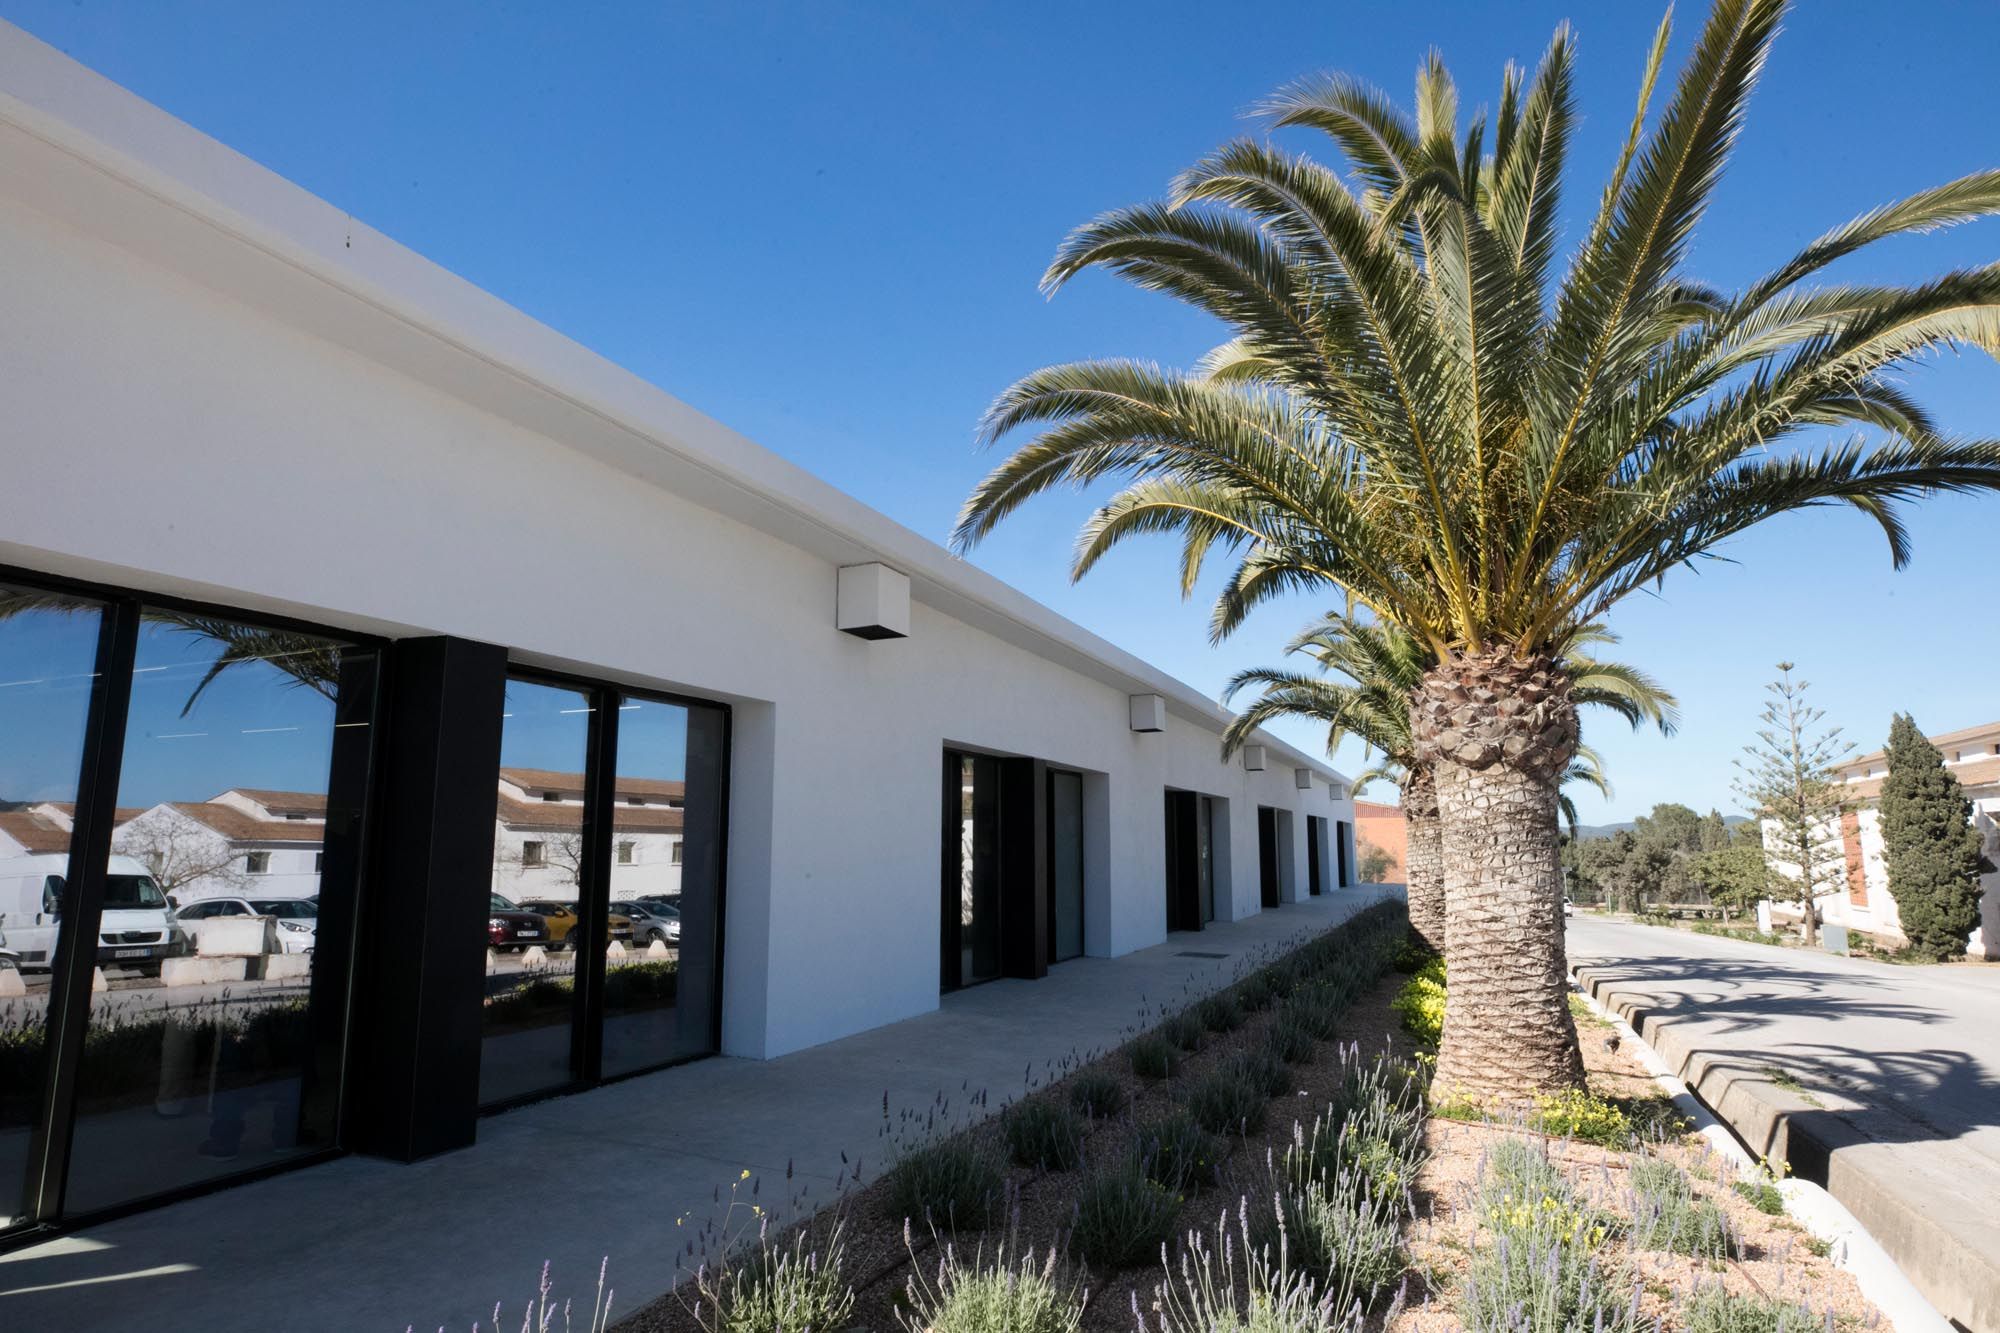 Inauguración de la Escuela de Hostelería de Ibiza